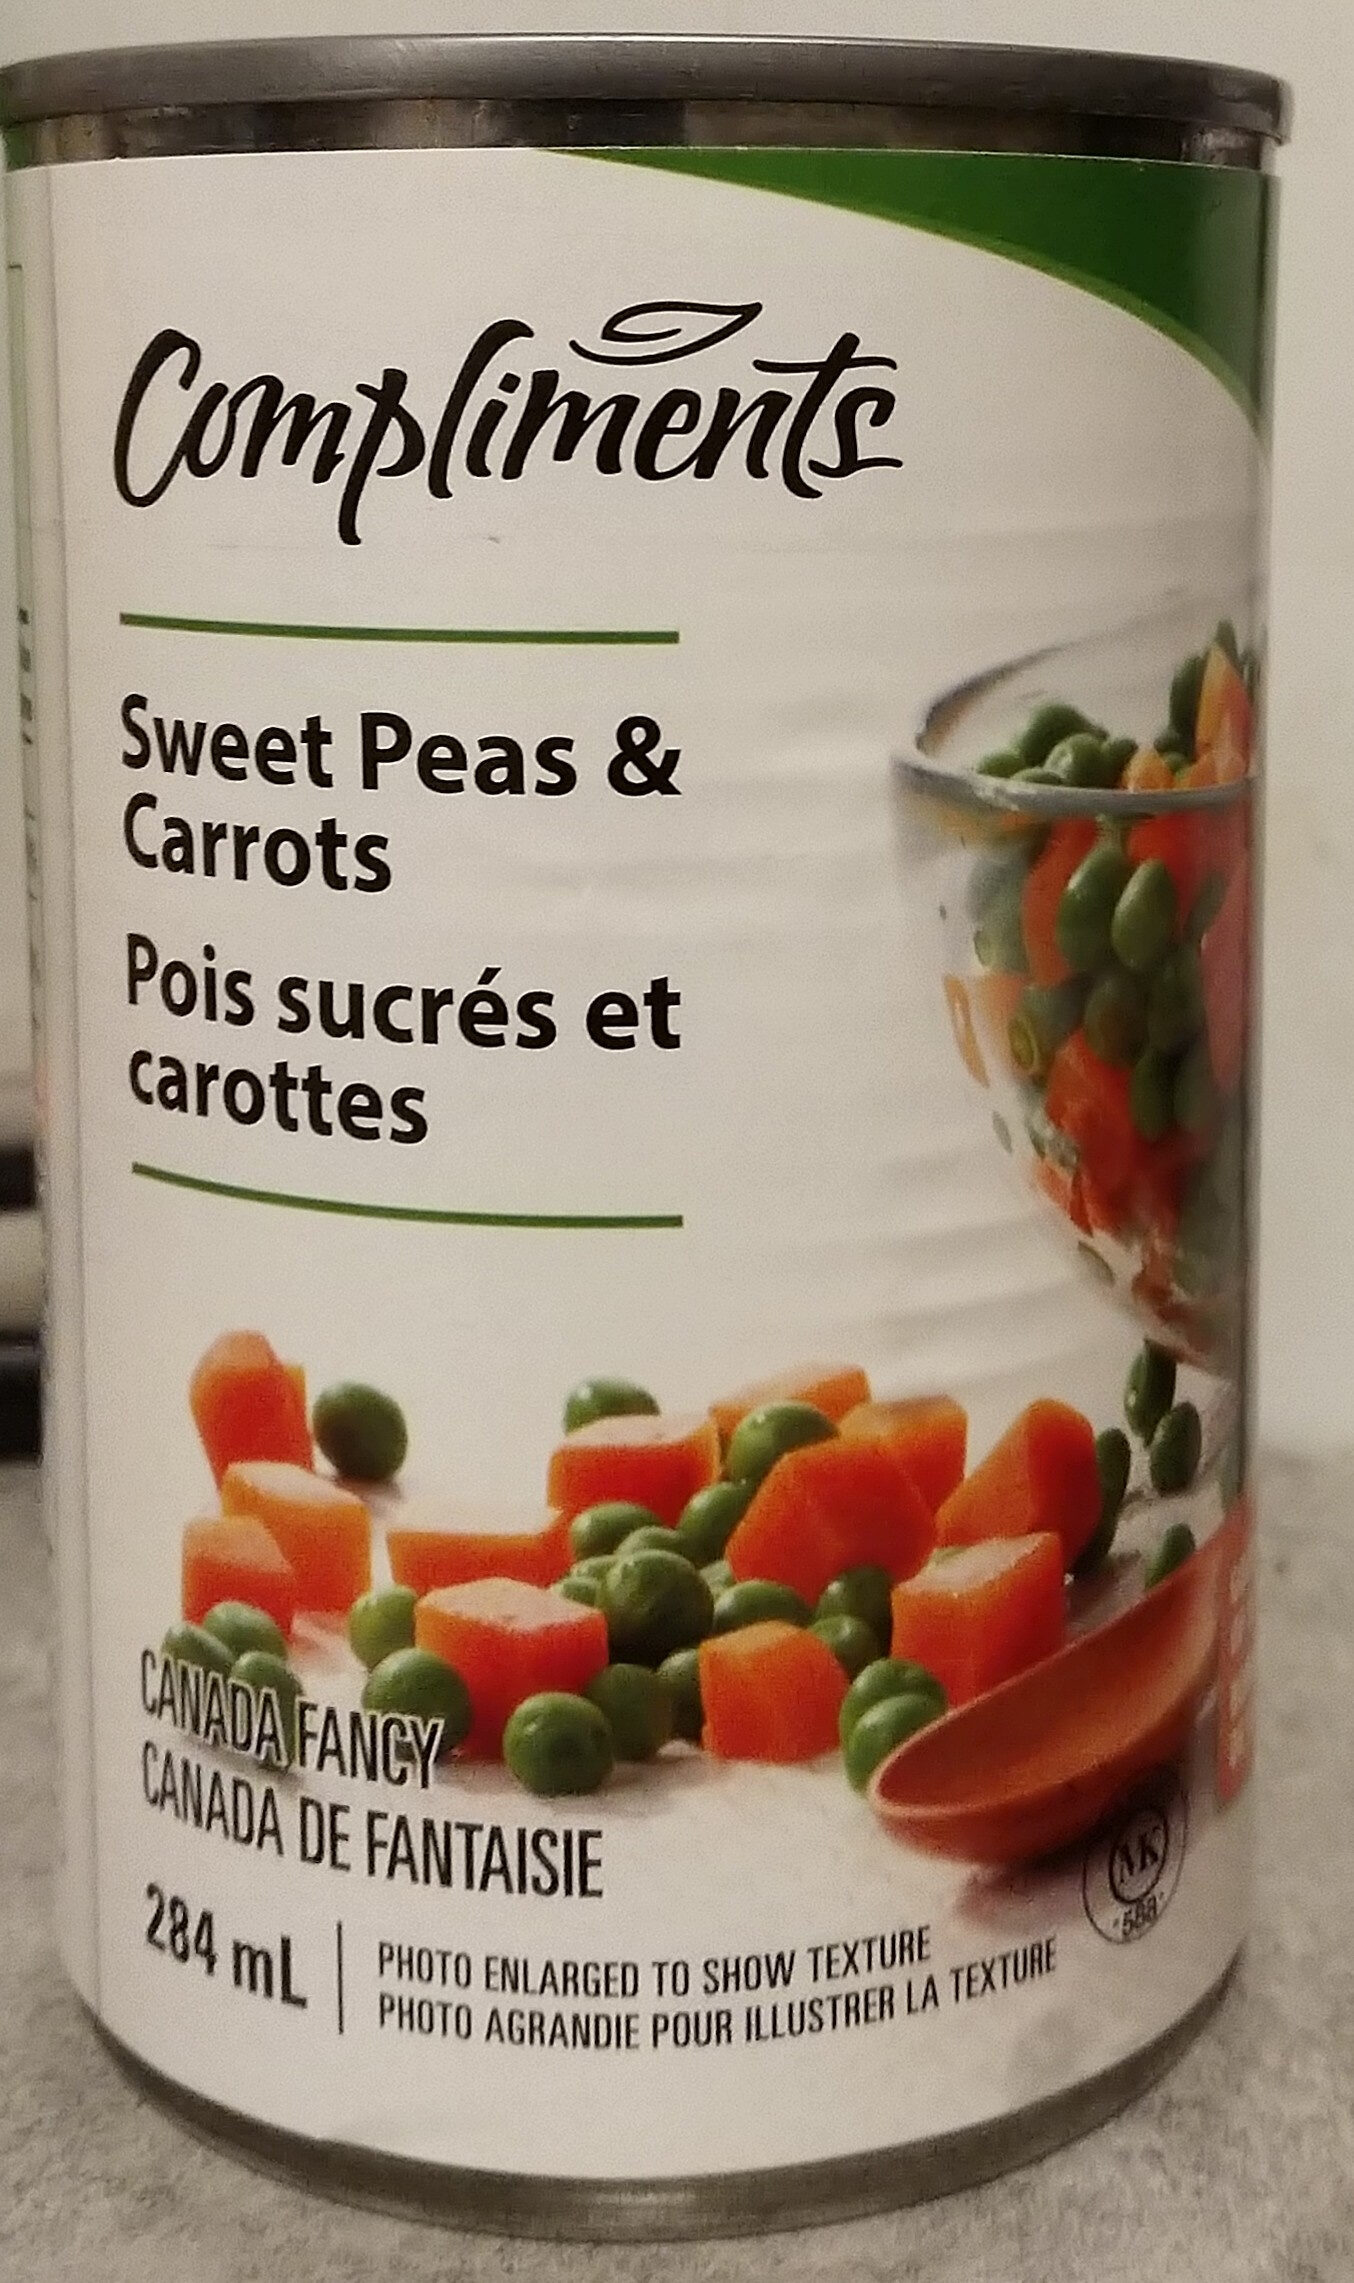 Pois sucrés et carottes - Product - en